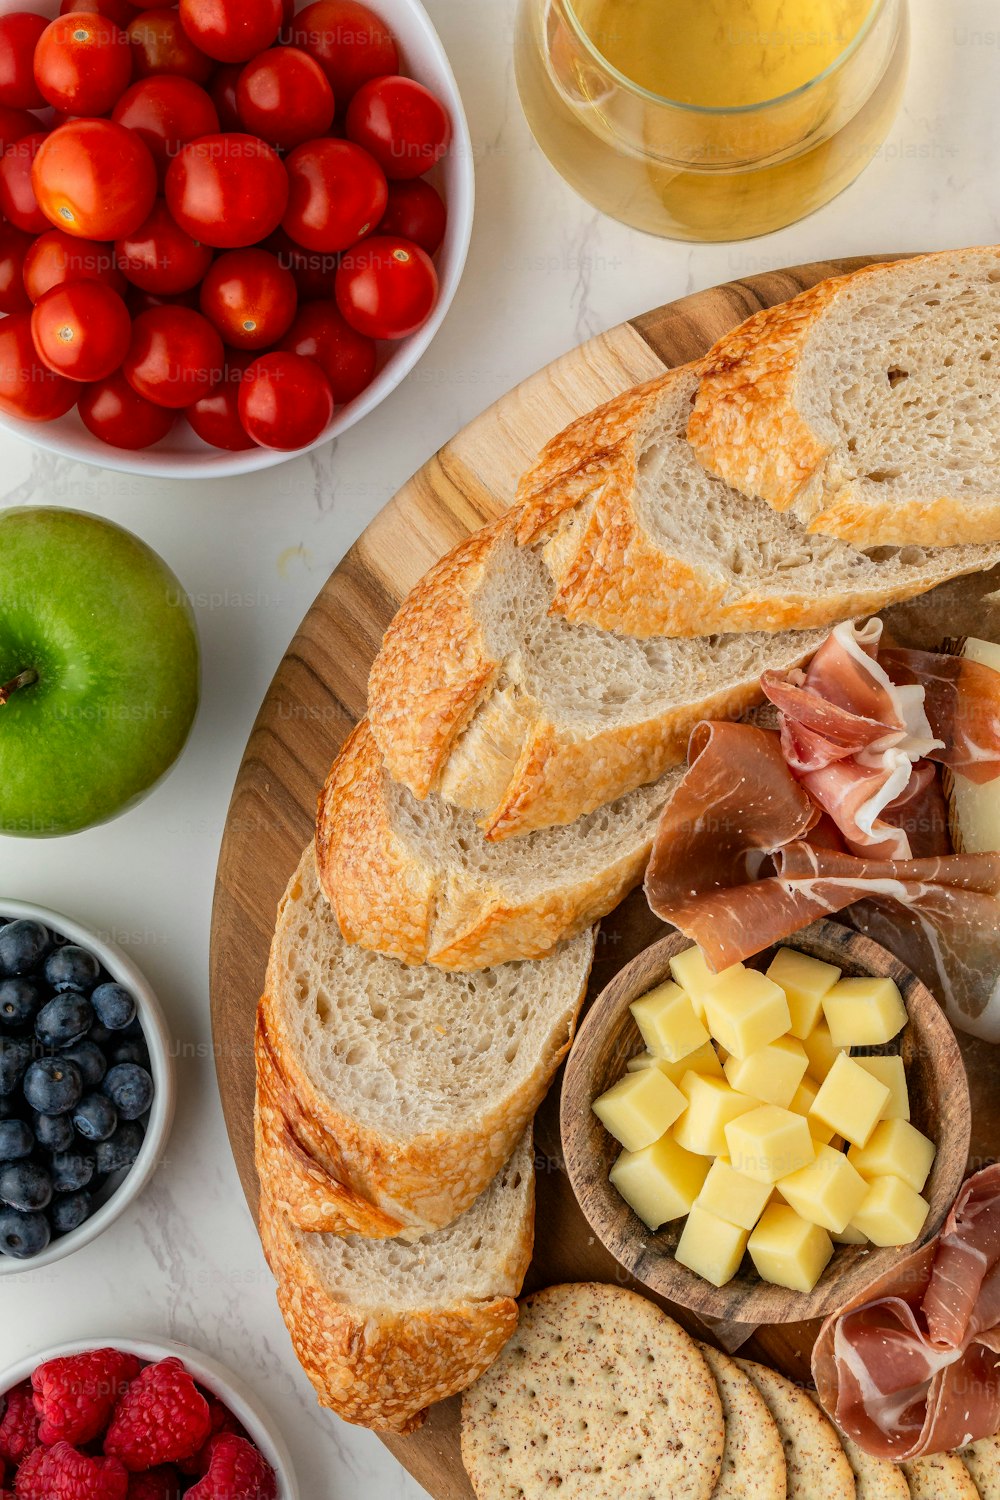 un plato de pan, fruta, queso y galletas saladas